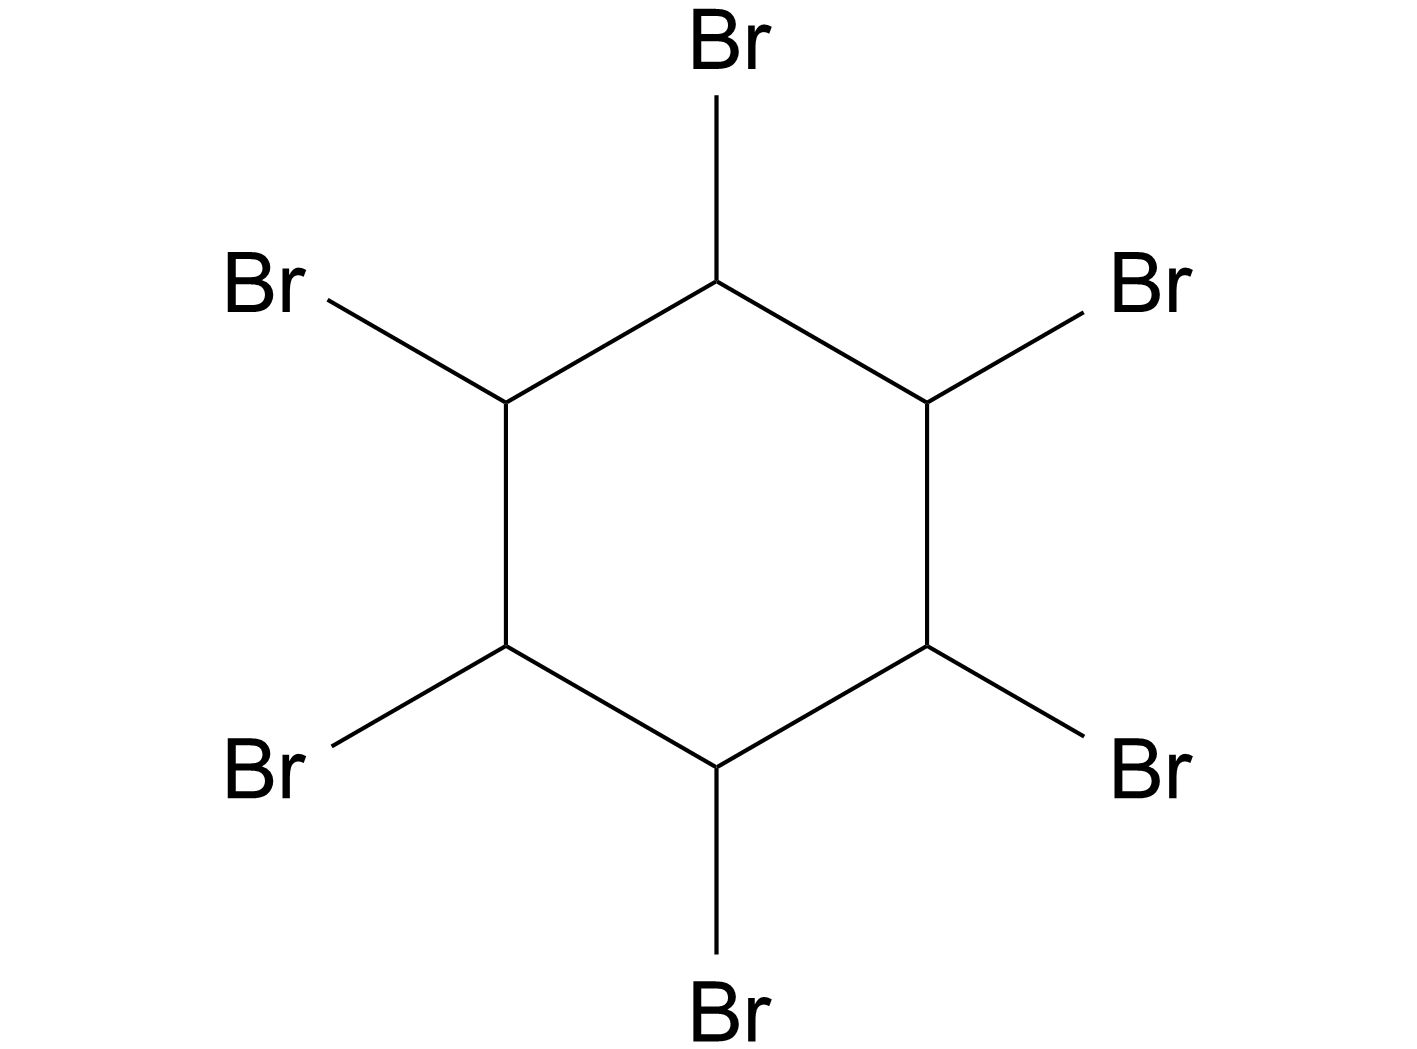 1,2,3,4,5,6-Hexabromocyclohexane